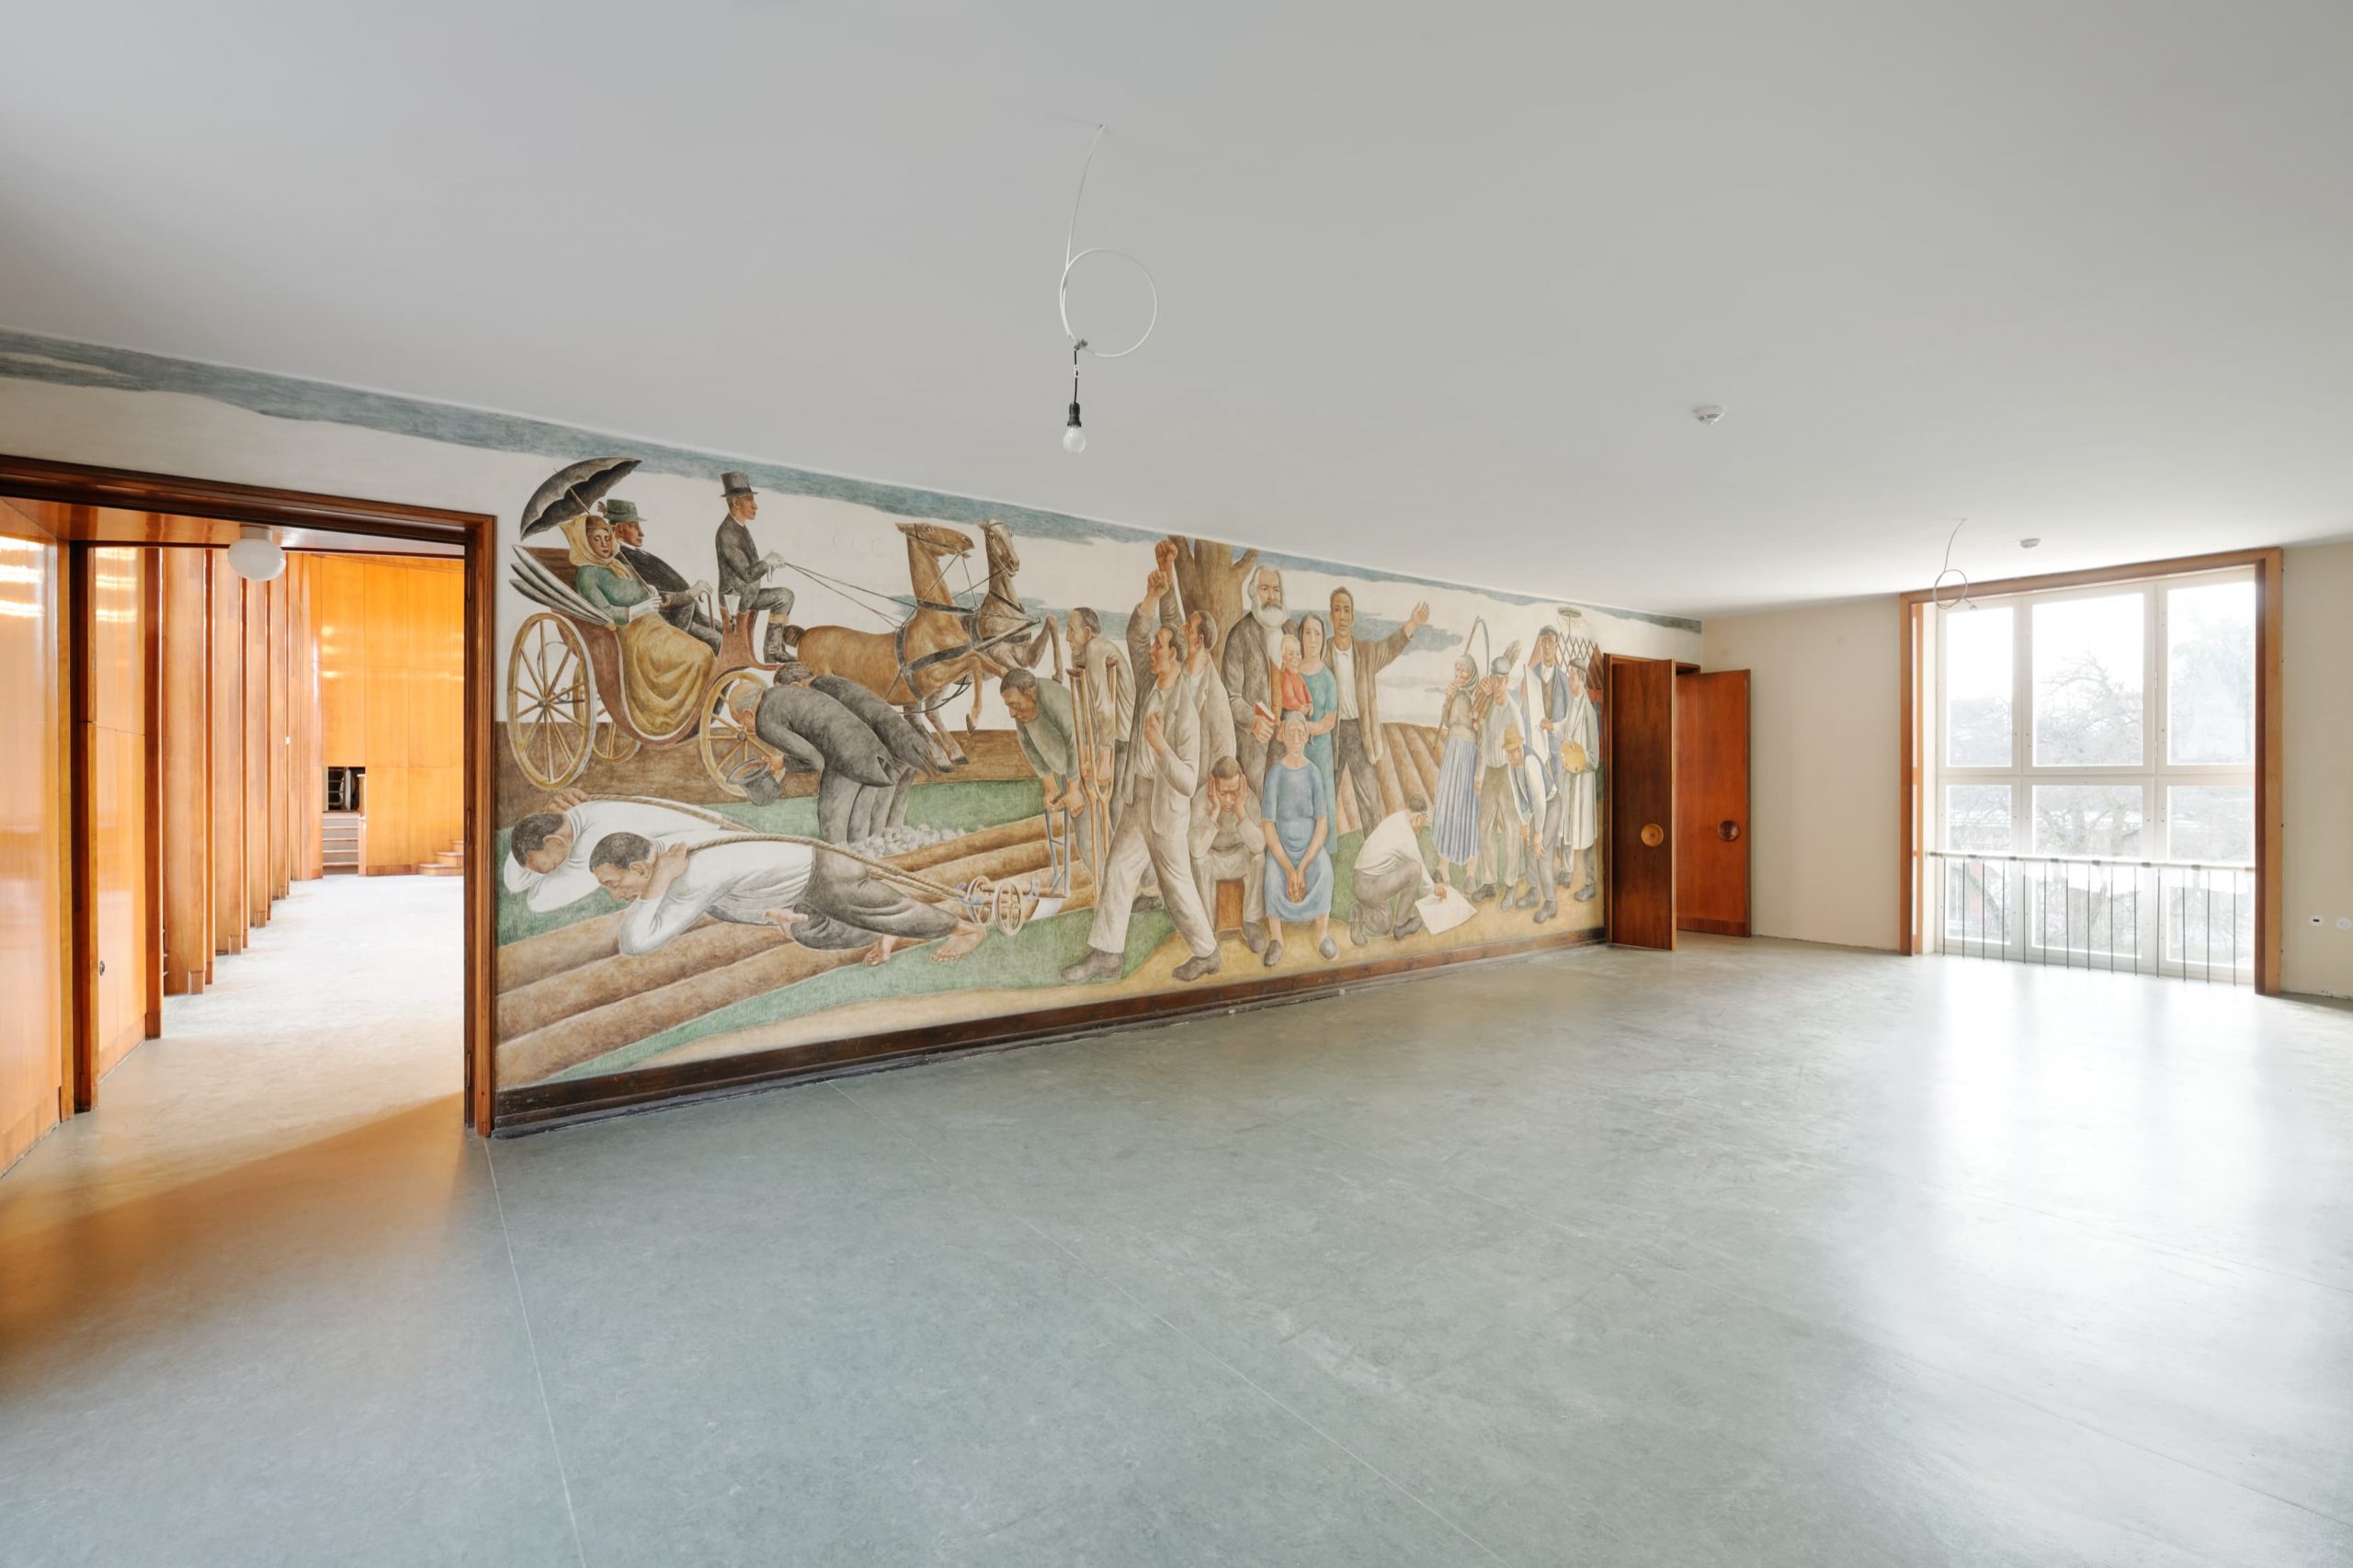 Aula und Vorraum der Kunsthochschule Berlin-Weißensee